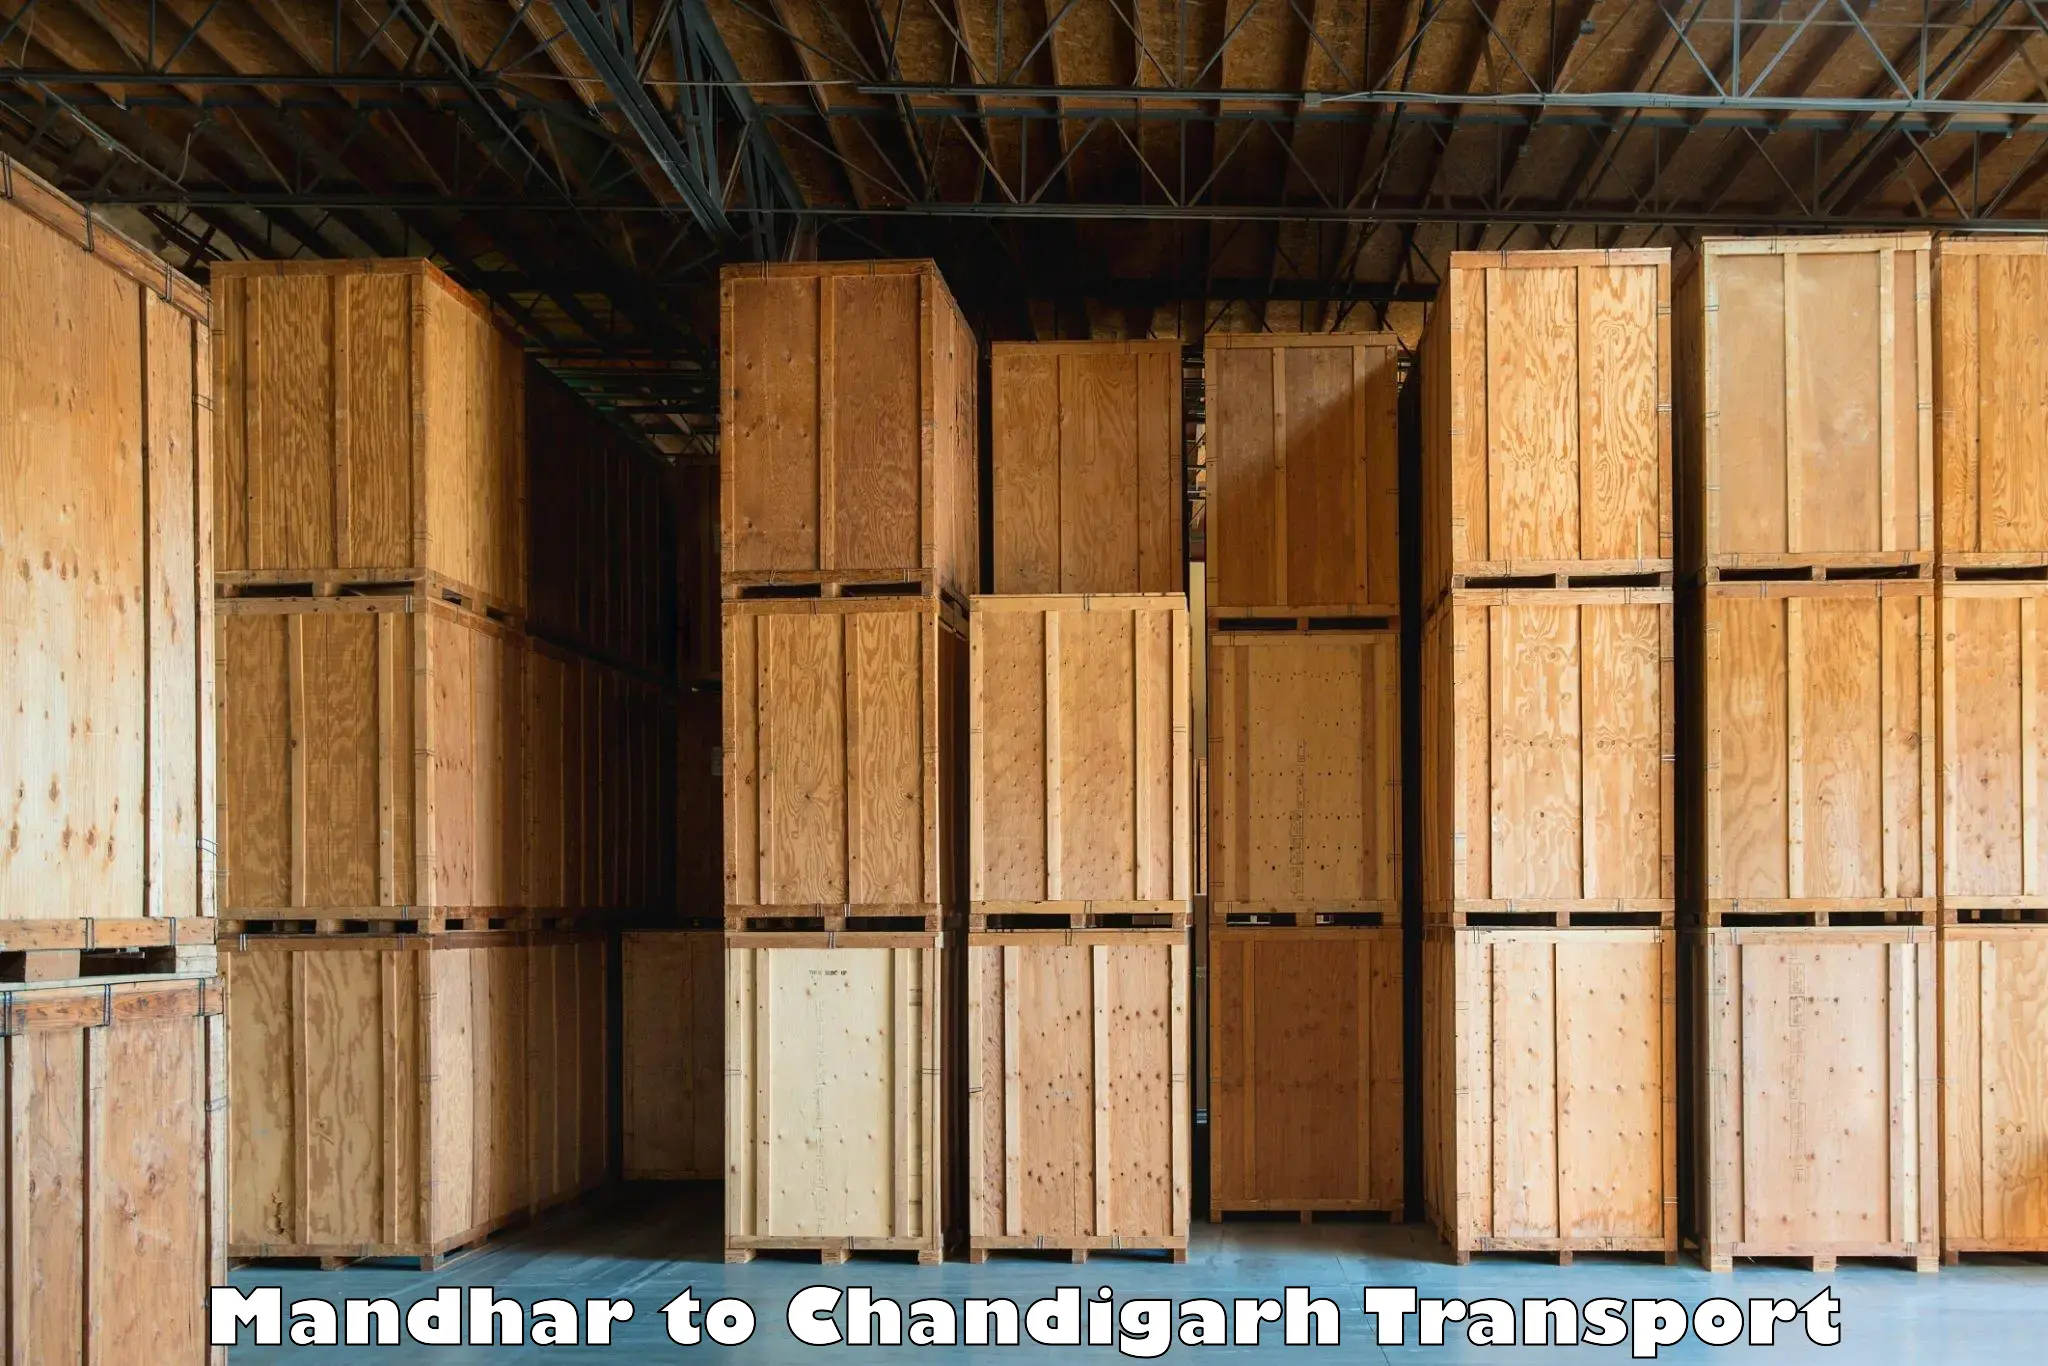 Interstate transport services Mandhar to Chandigarh